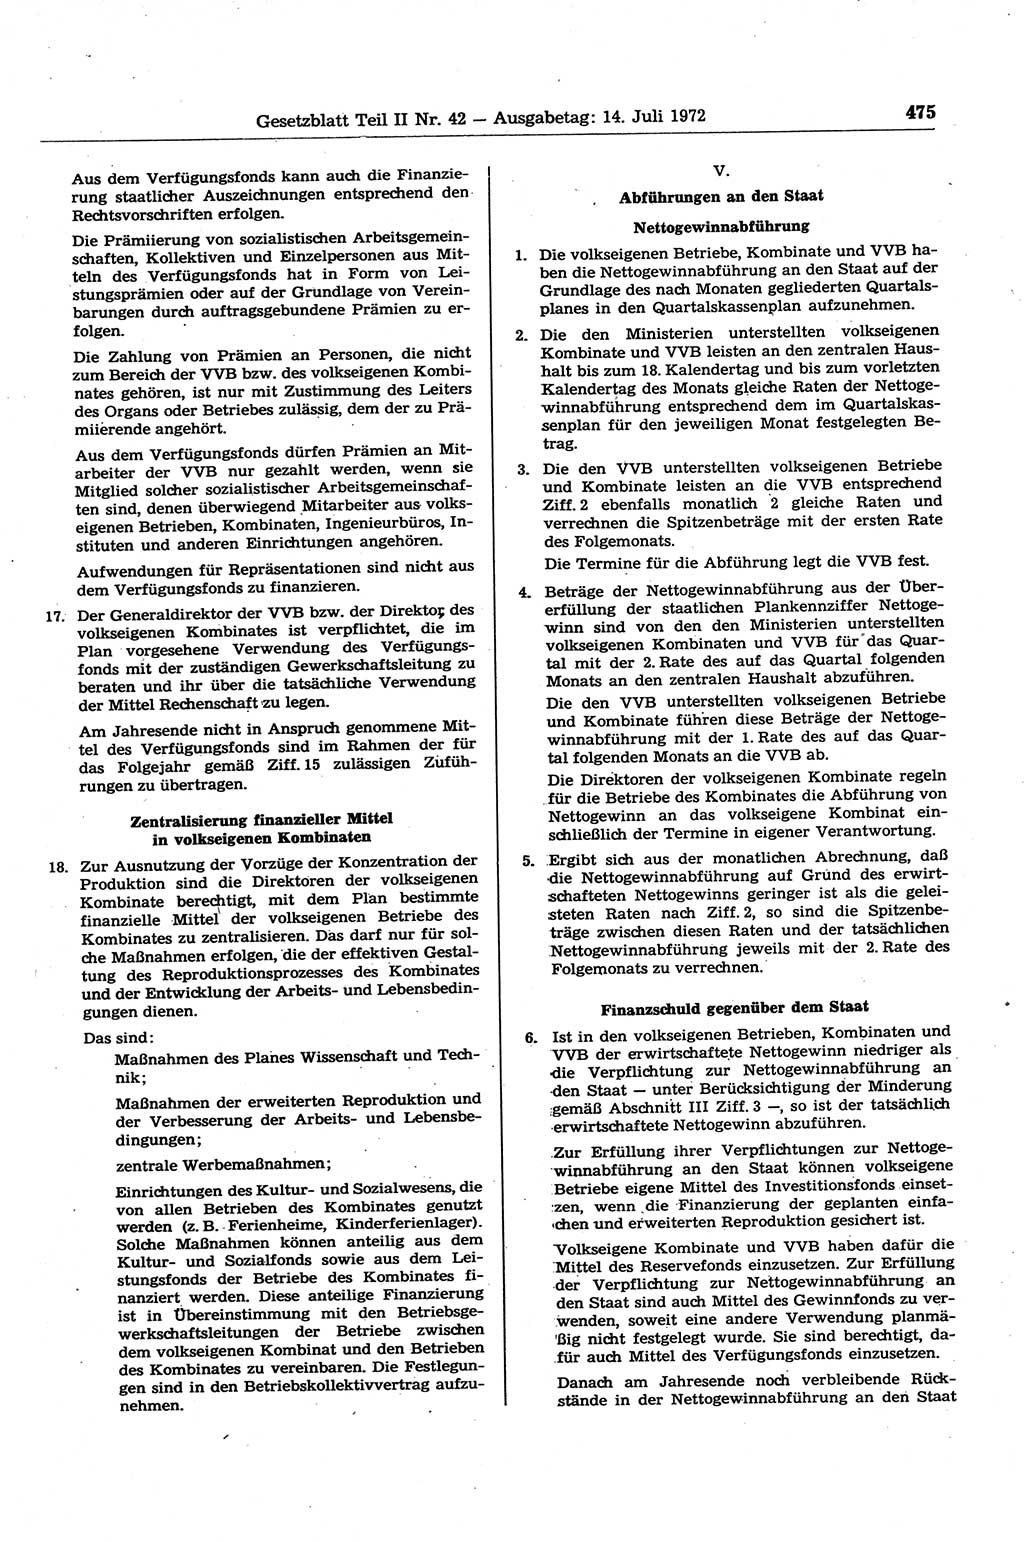 Gesetzblatt (GBl.) der Deutschen Demokratischen Republik (DDR) Teil ⅠⅠ 1972, Seite 475 (GBl. DDR ⅠⅠ 1972, S. 475)